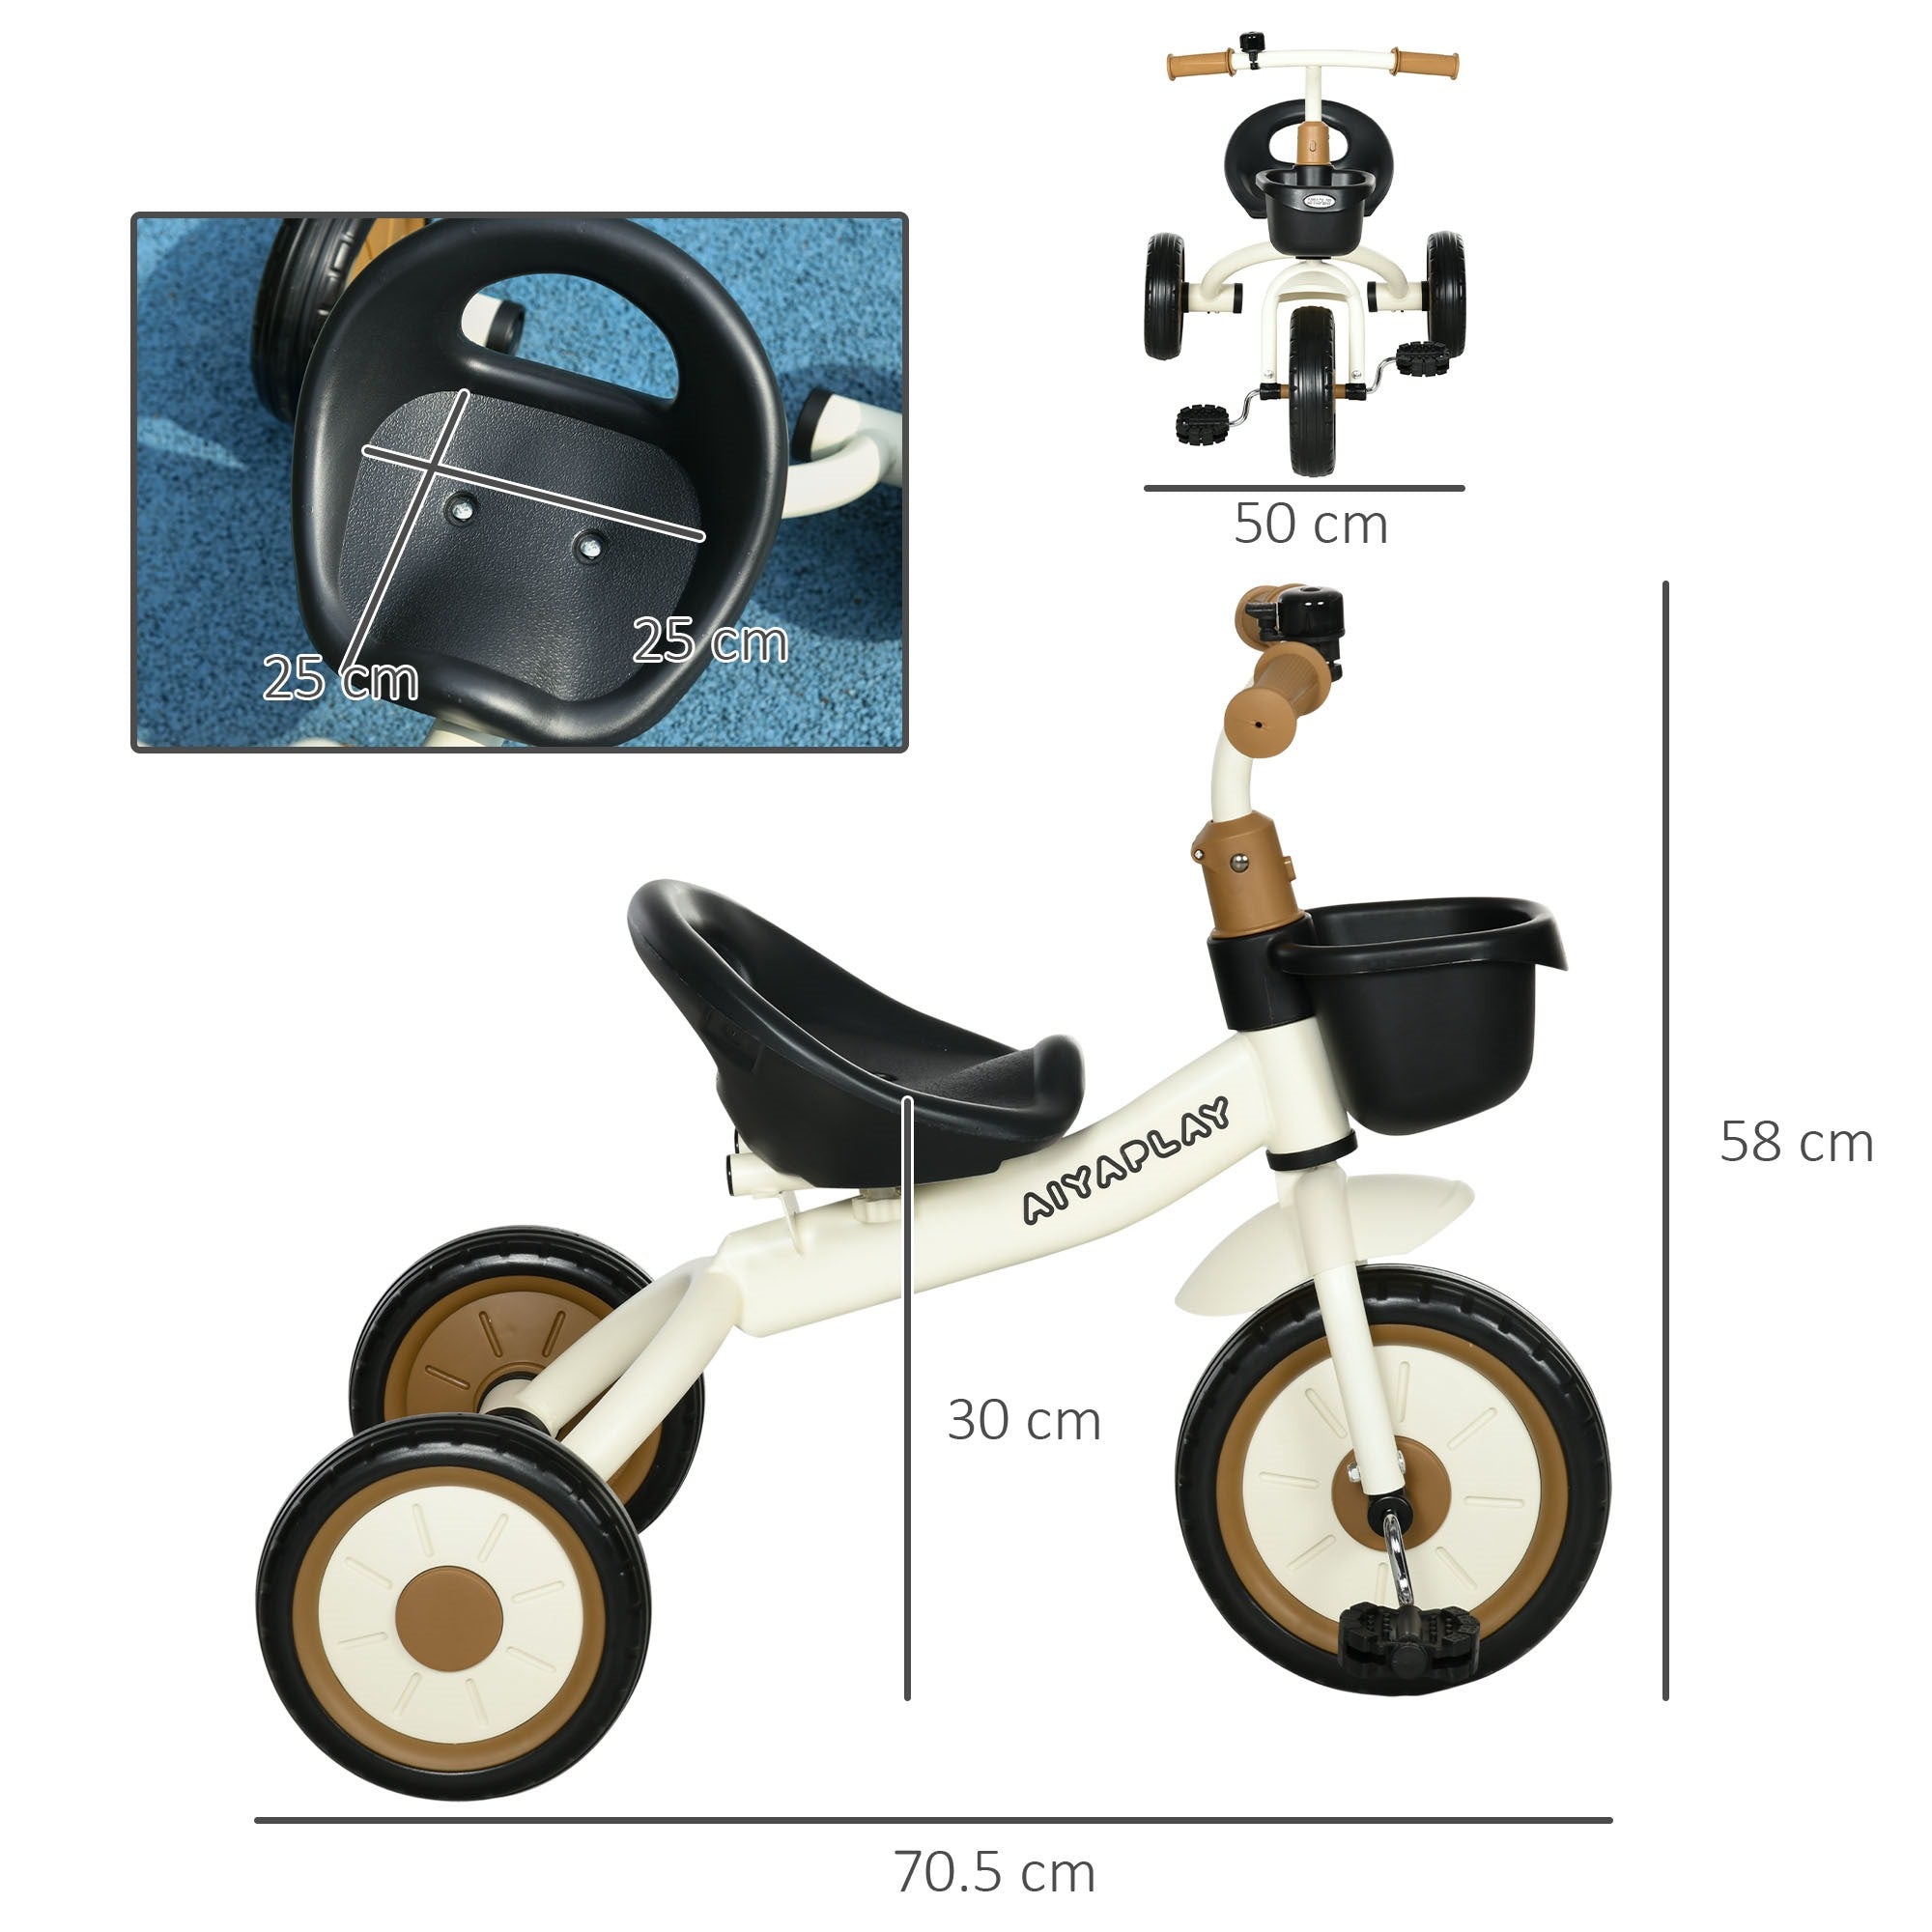 EASYCOMFORT Triciclo per Bambini da 2-5 Anni con Seduta Regolabile